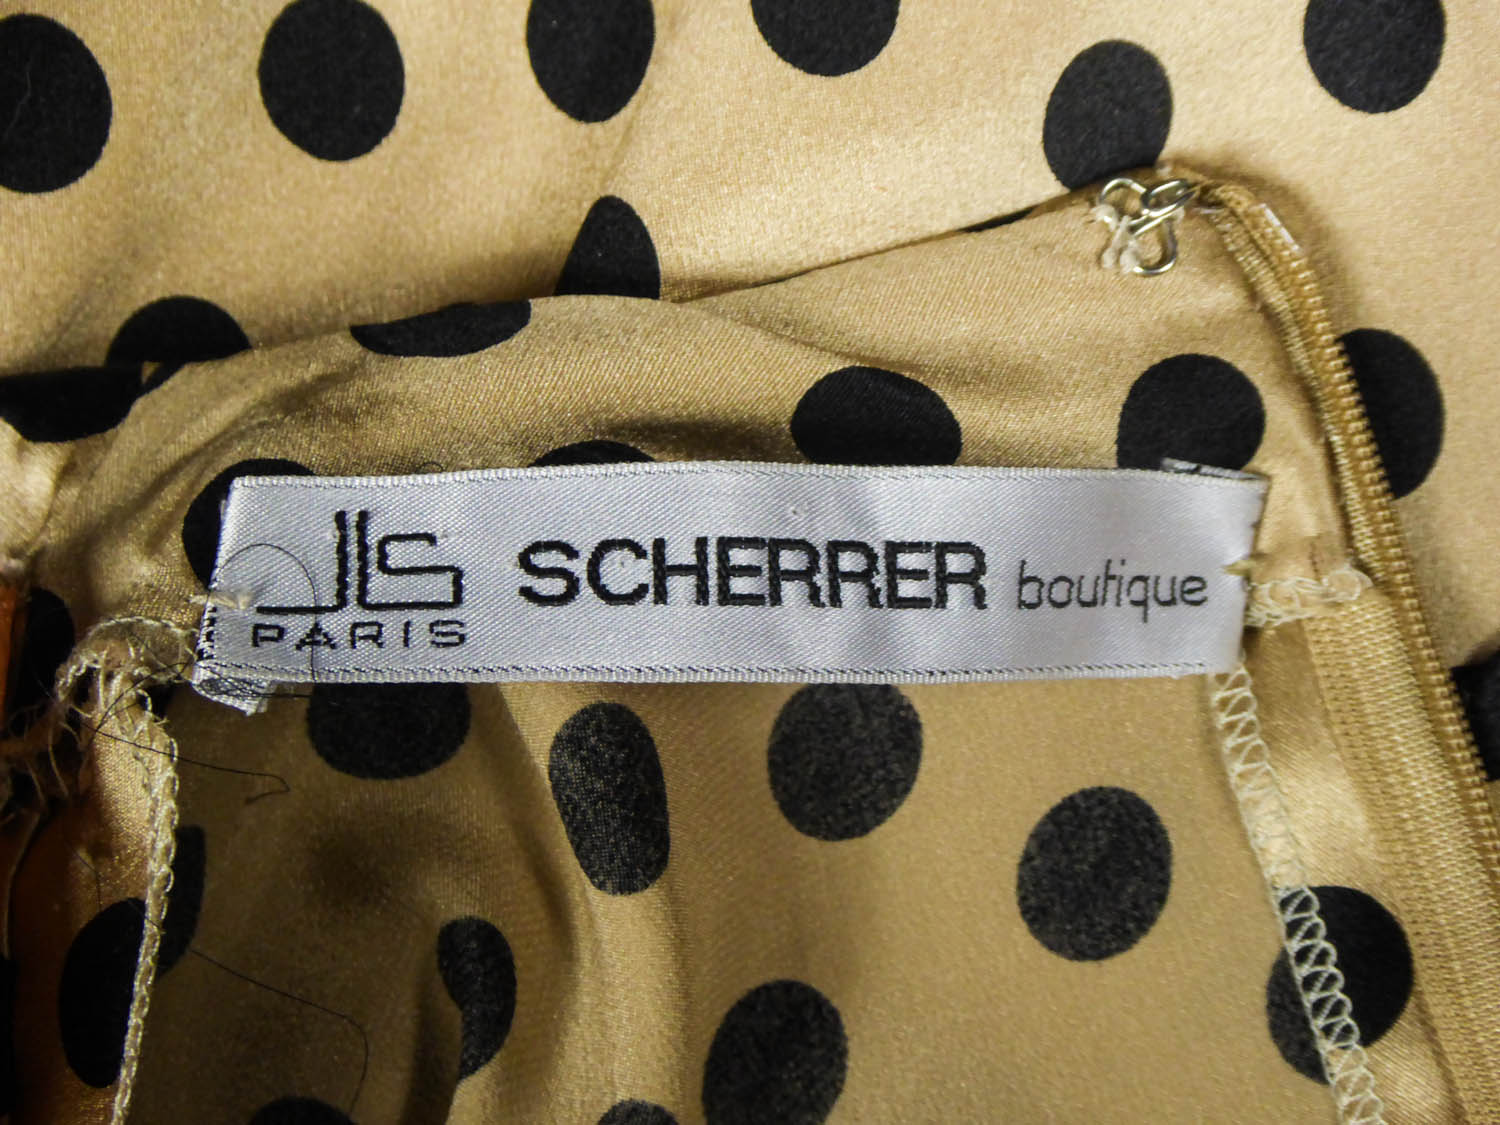 JLS Scherrer Paris, Bags